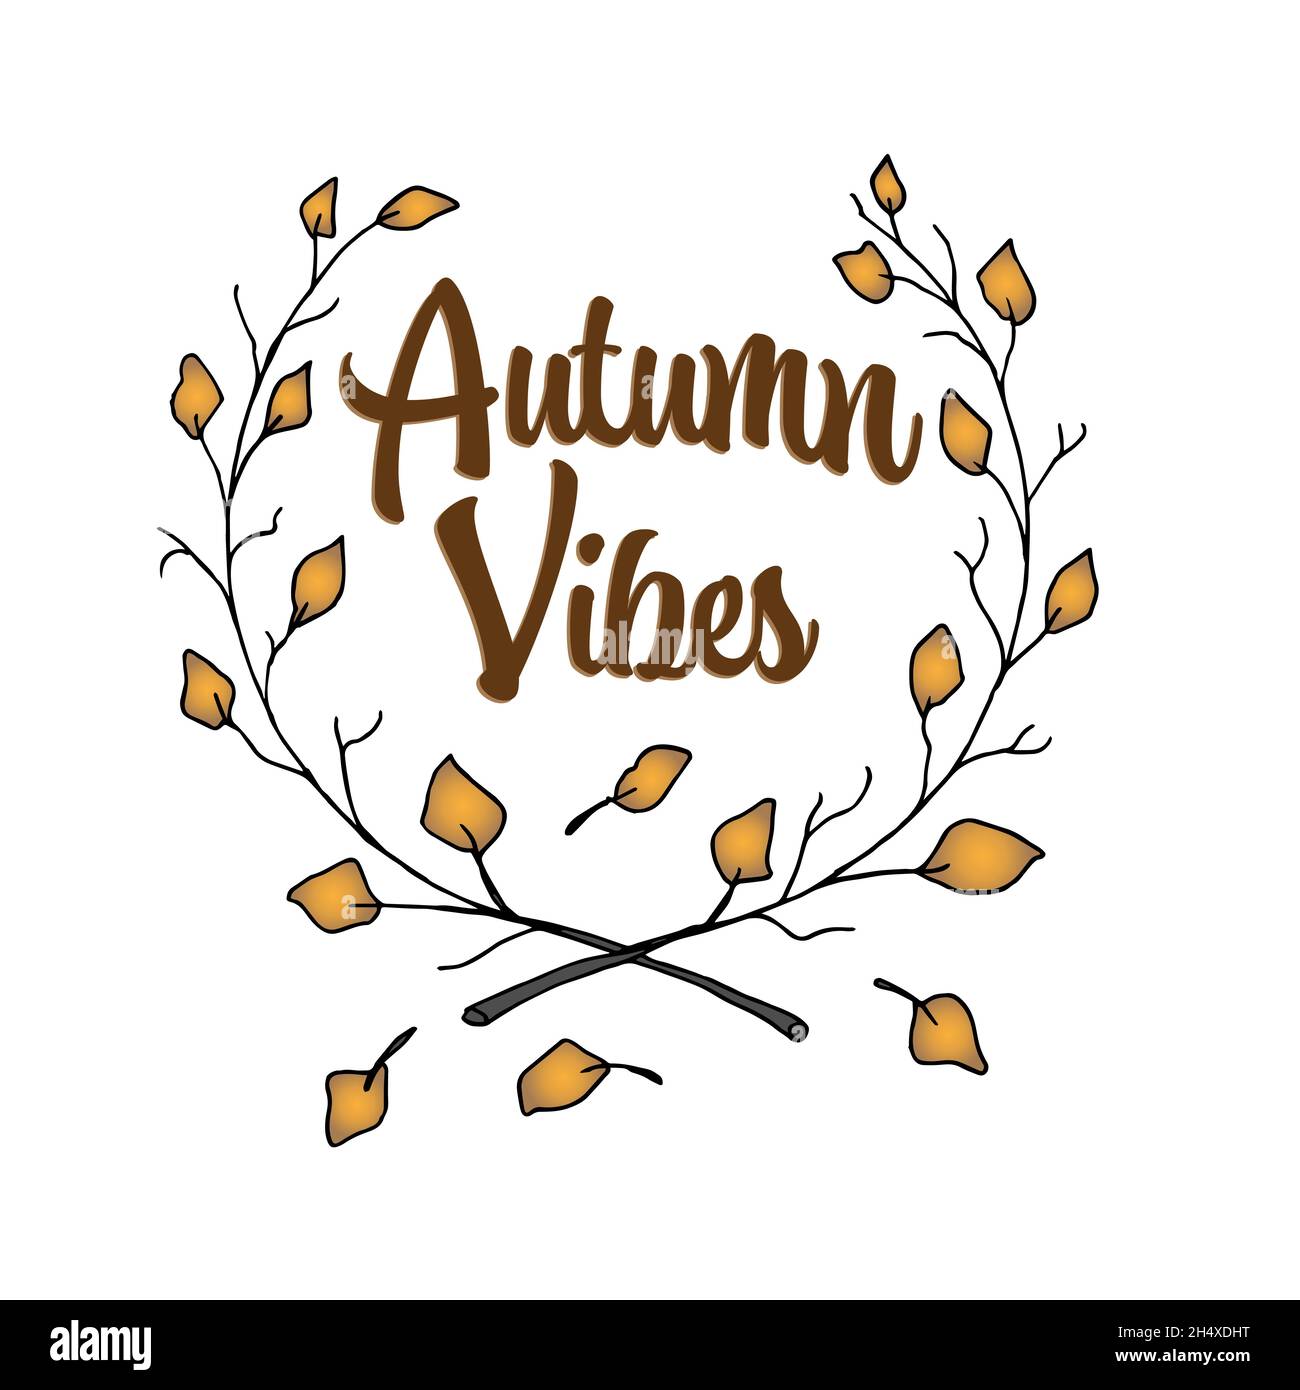 Kranz aus Ästen mit Herbstblättern auf weißem Hintergrund, Herbststimmung Konzept, Vektorgrafik Stock Vektor